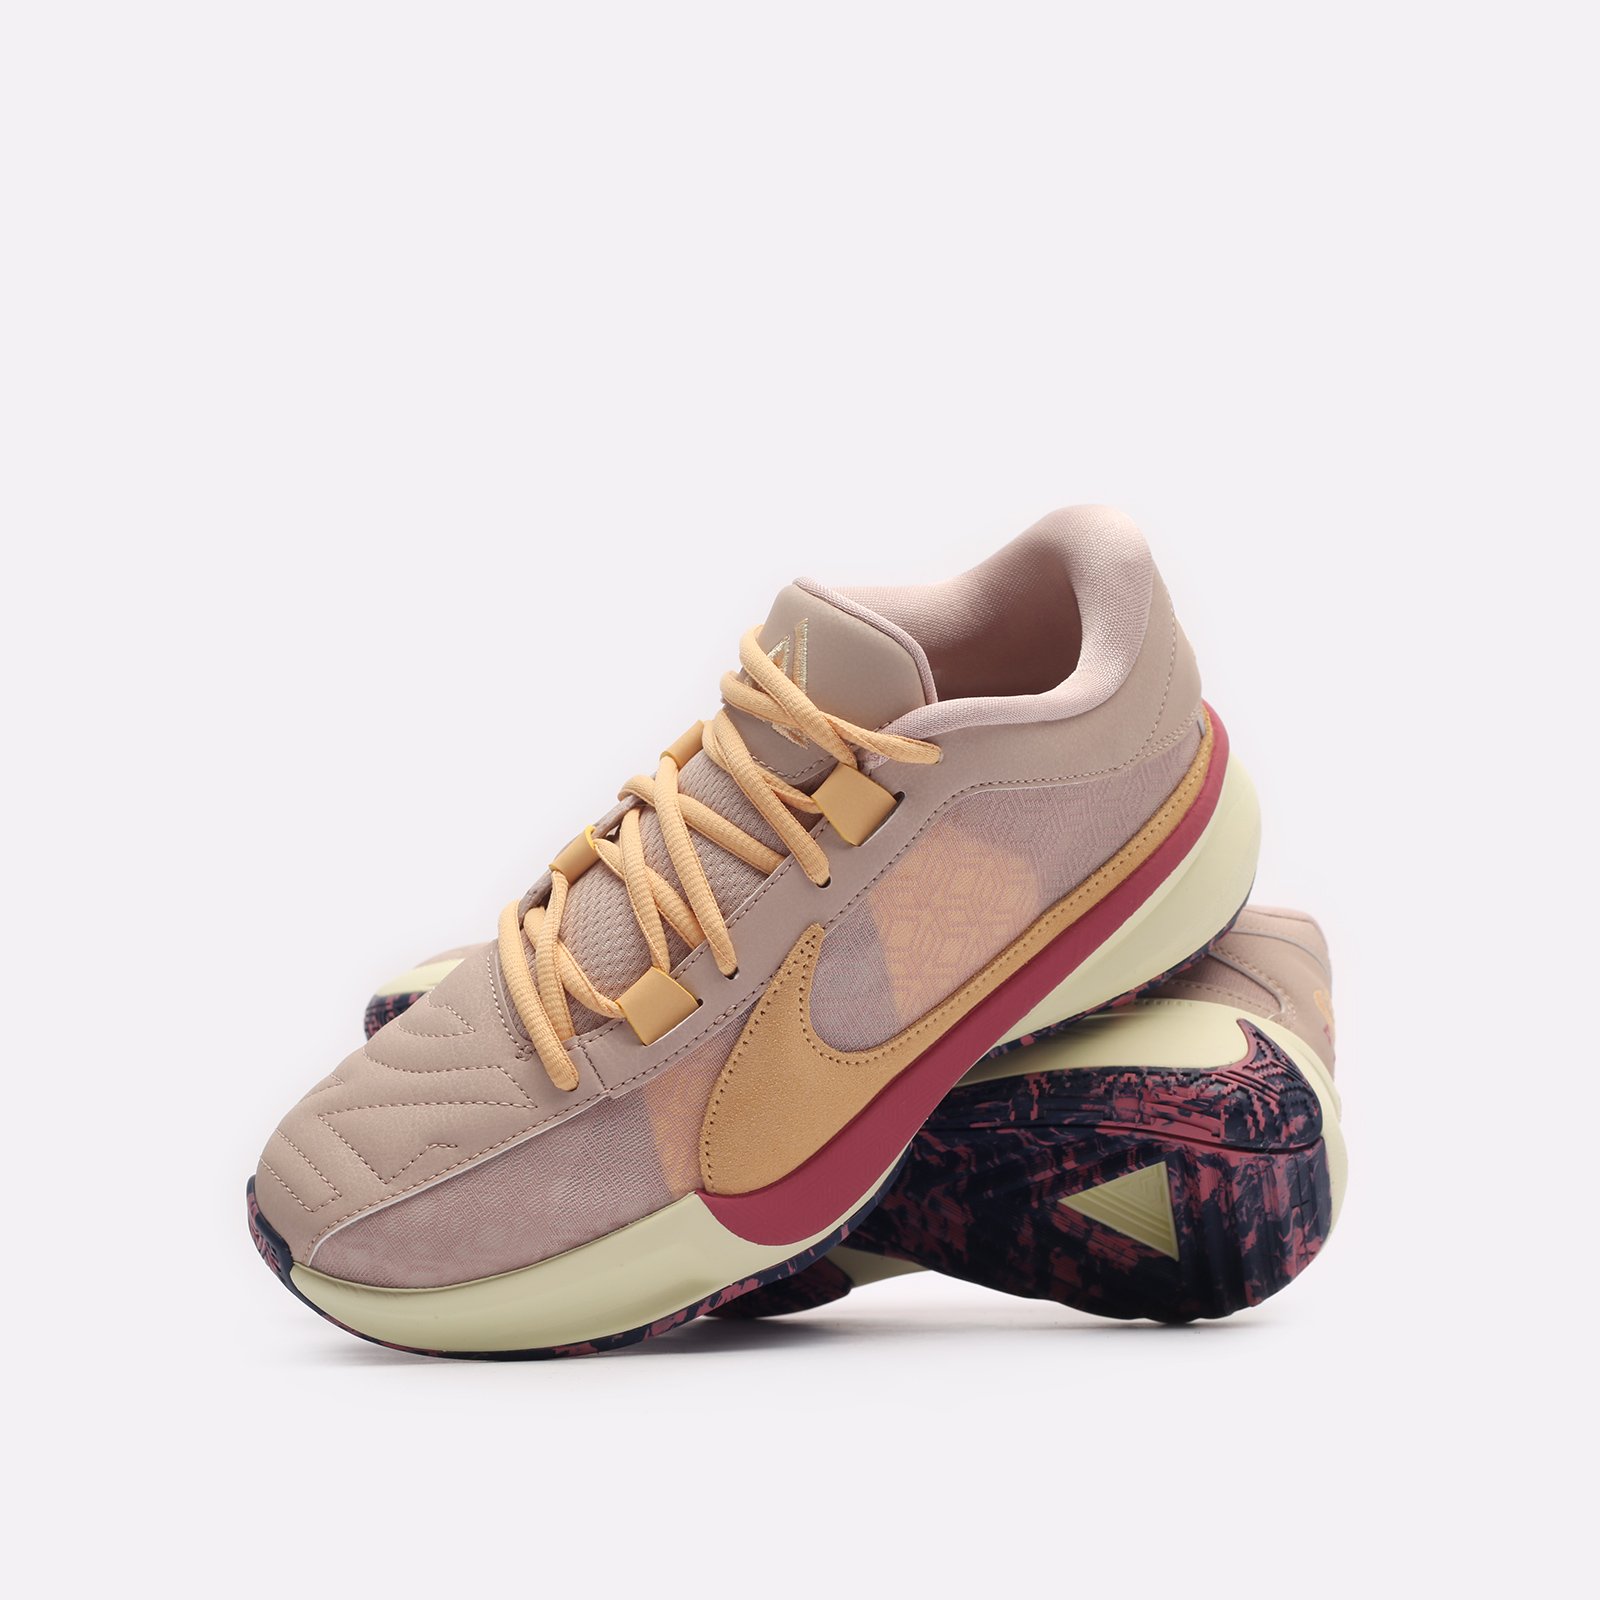 мужские баскетбольные кроссовки Nike Zoom Freak 5 EP  (DX4996-200)  - цена, описание, фото 2